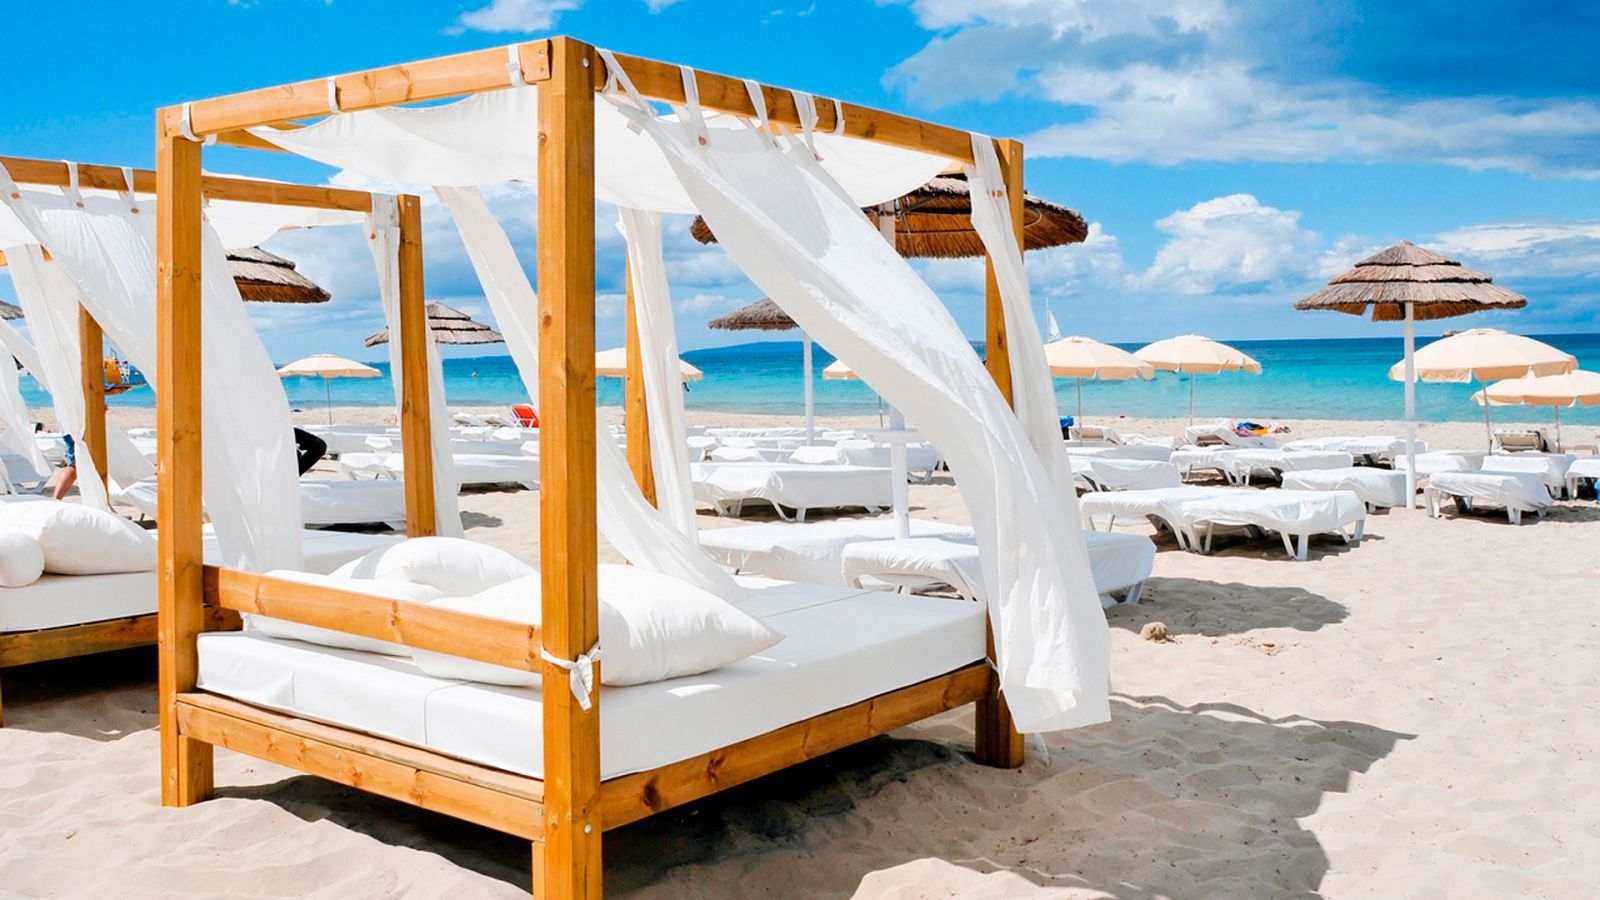 Comando al sol - Ibiza, un turismo de lujo para presumir en las redes sociales